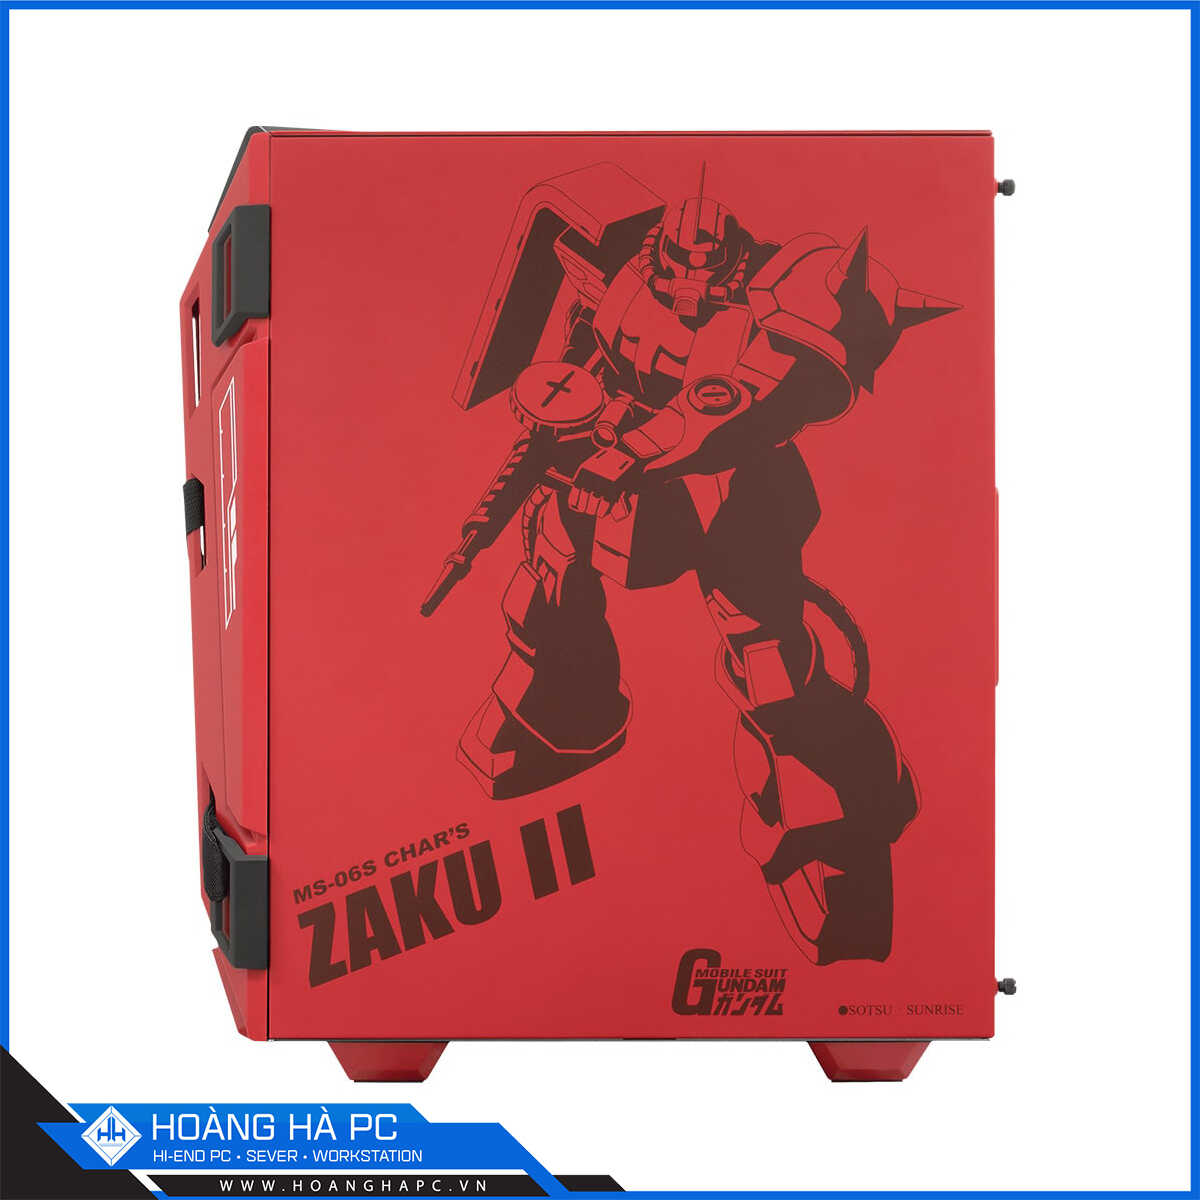 Vỏ case ASUS TUF Gaming GT301 ZAKU II Edition (Mid Tower/Màu Đỏ)